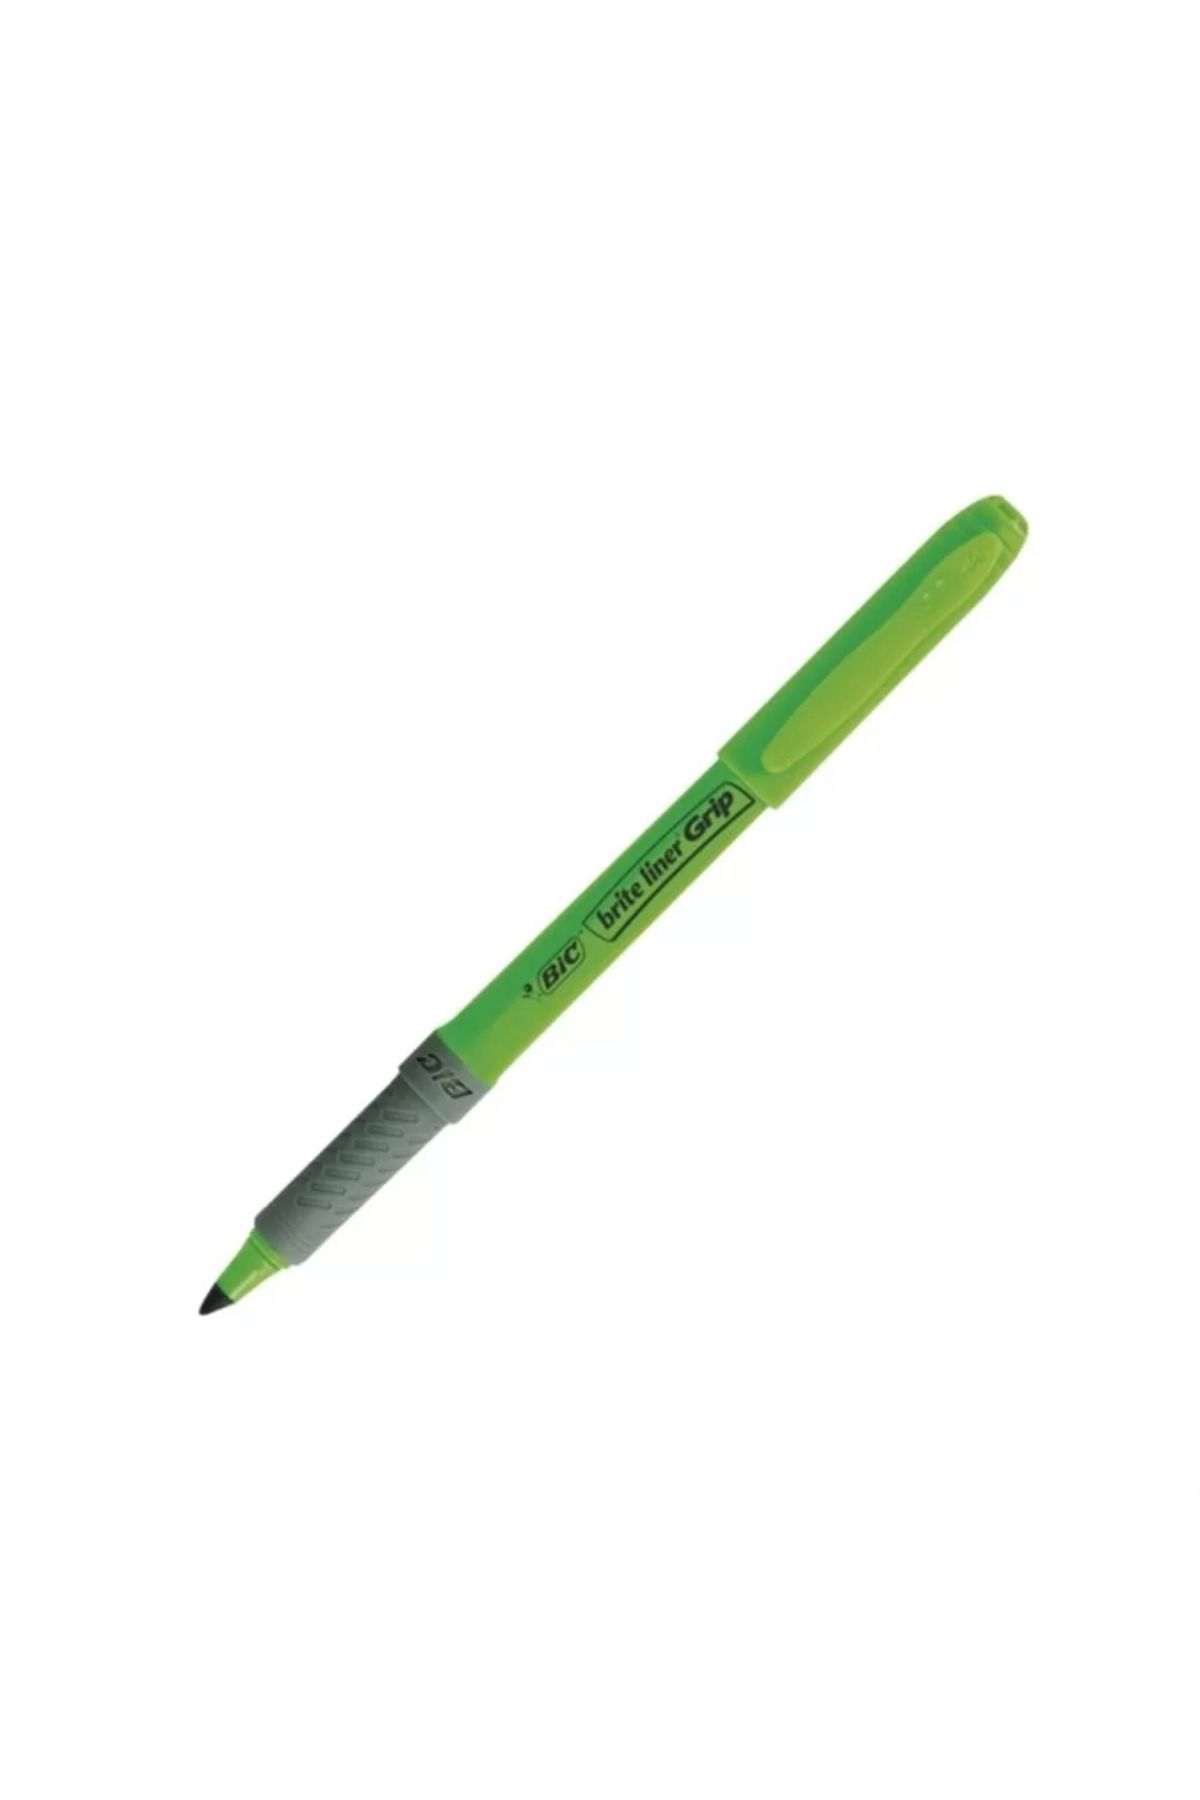 Bic Brite Liner Grip Kalem Tipi Yeşil Fosforlu Kalem (5Lİ PAKET)